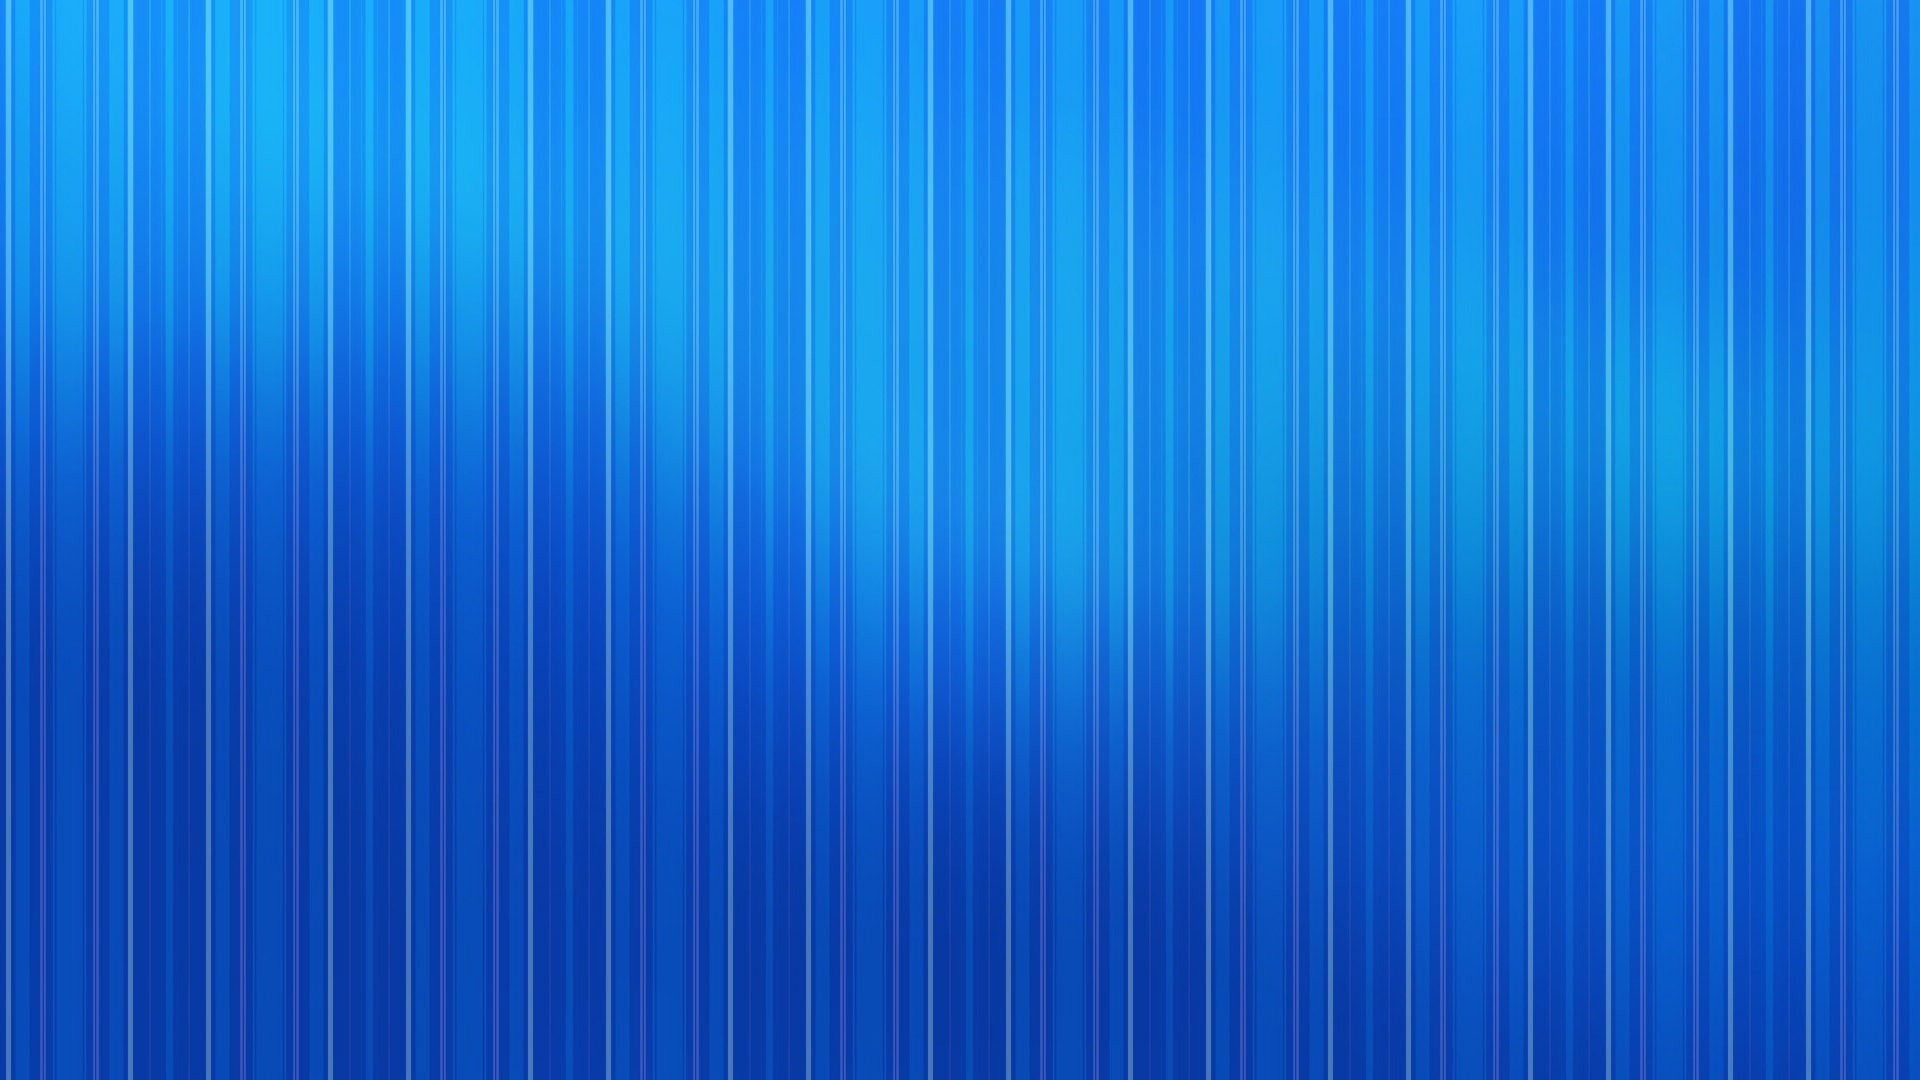 Blue stripe pattern wallpaper